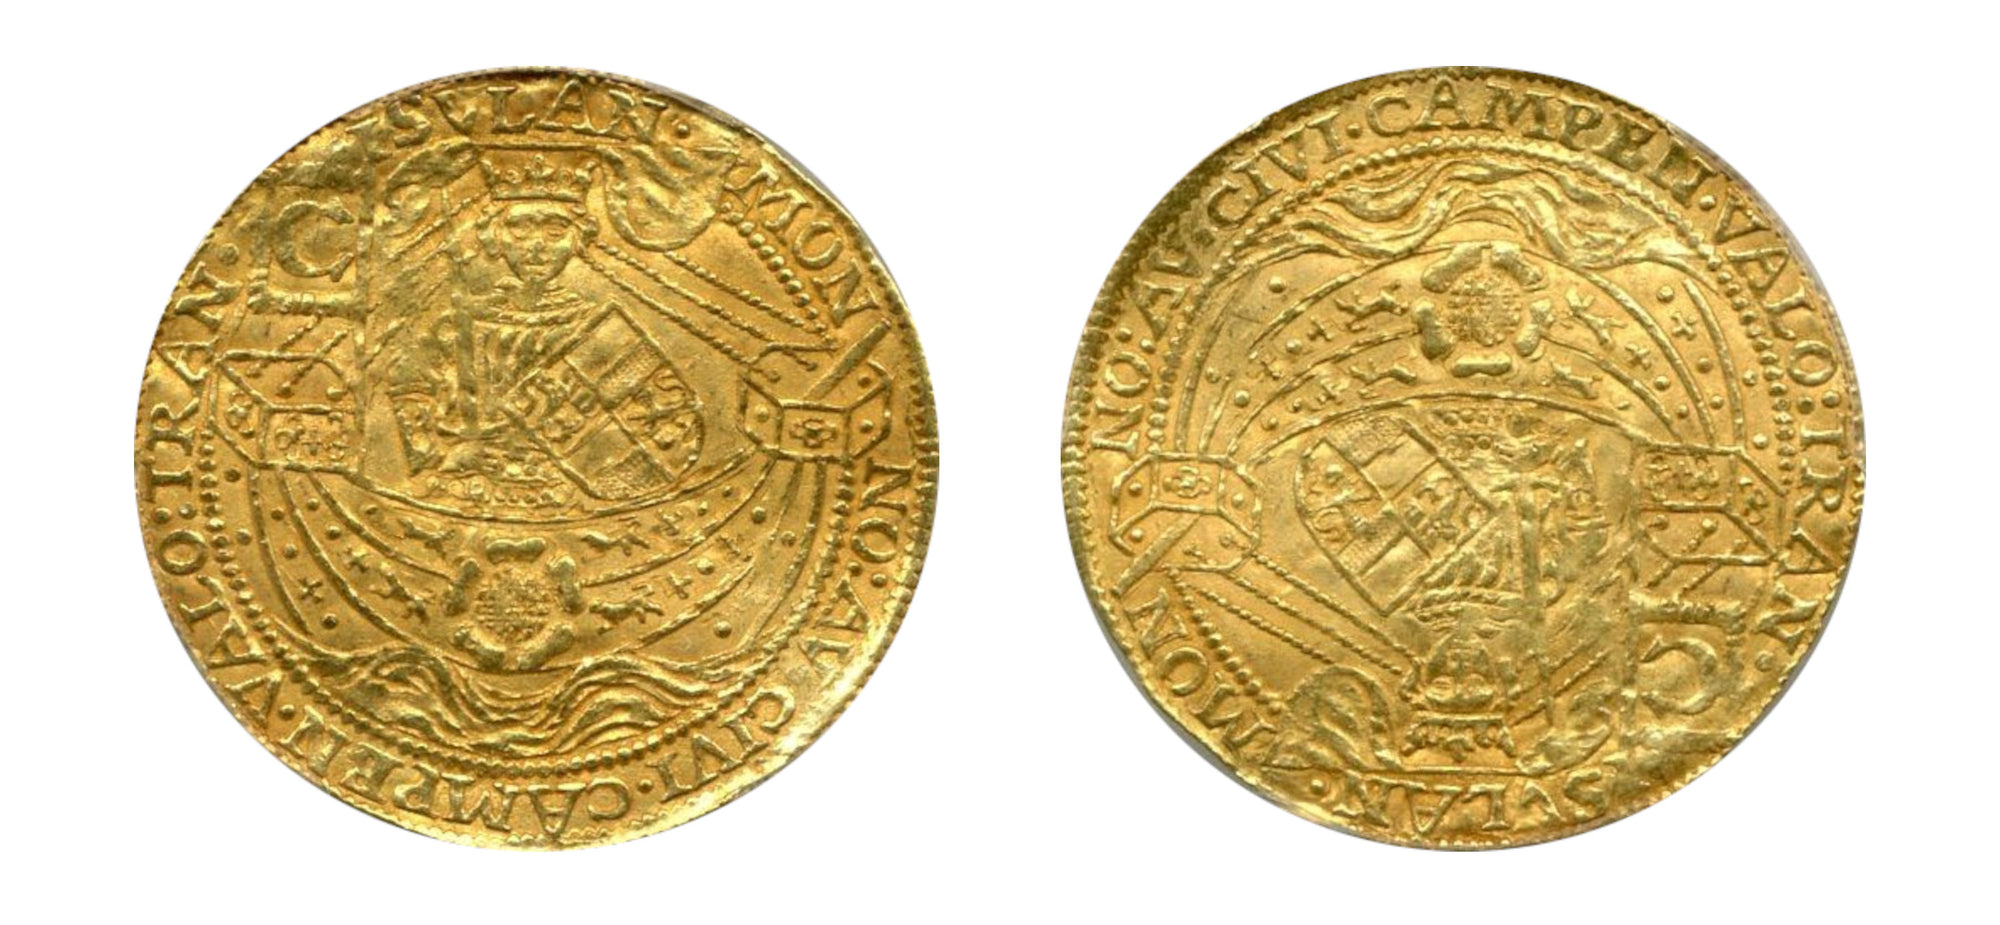 1600-1602-Netherlands (Kampen) Gold Royal Noble  PCGS MS 62 LM - Hard Asset Management, Inc